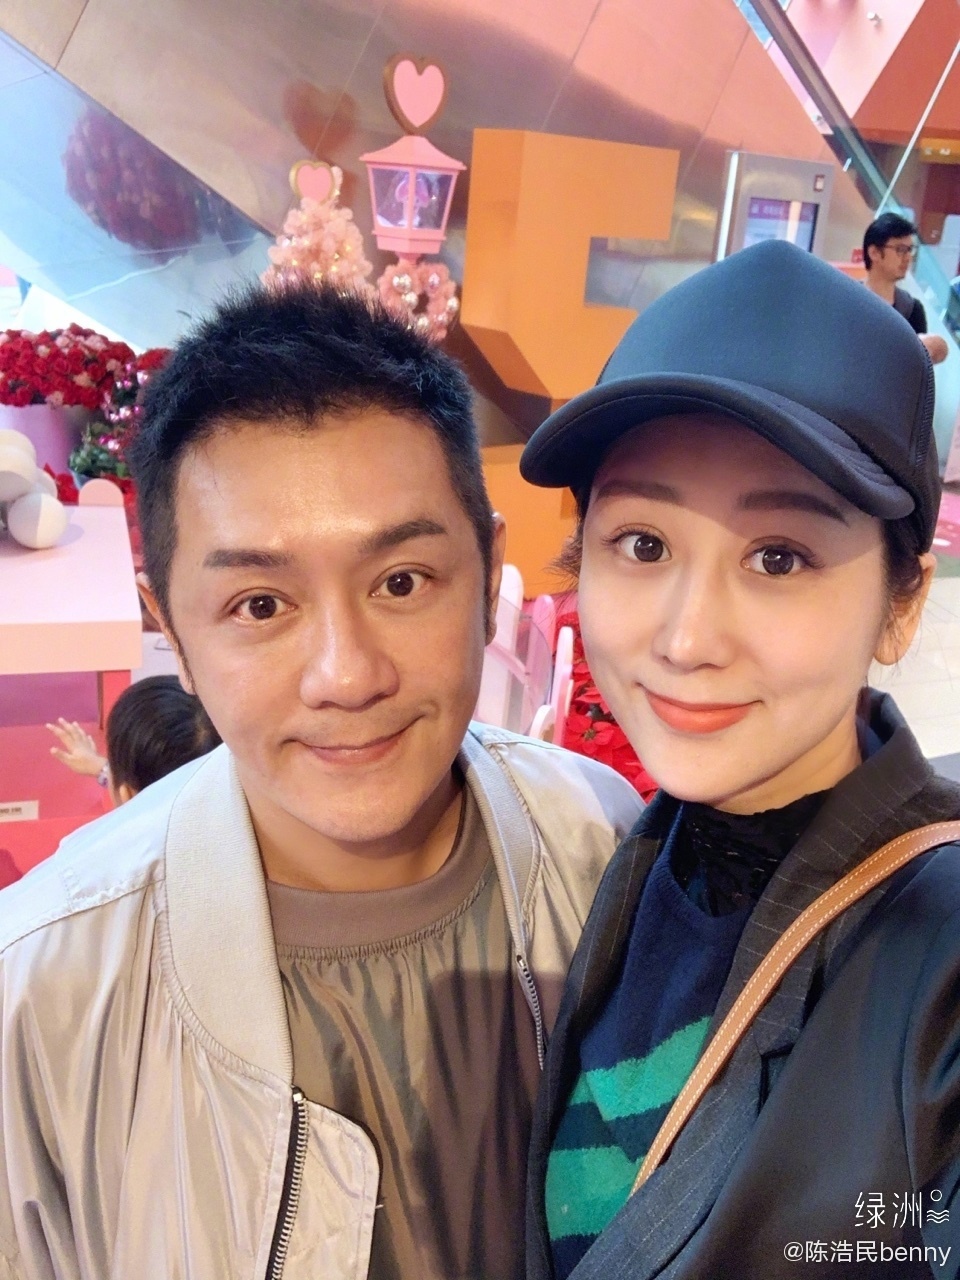  
Vợ chồng Trần Hạo Dân (Ảnh Weibo)